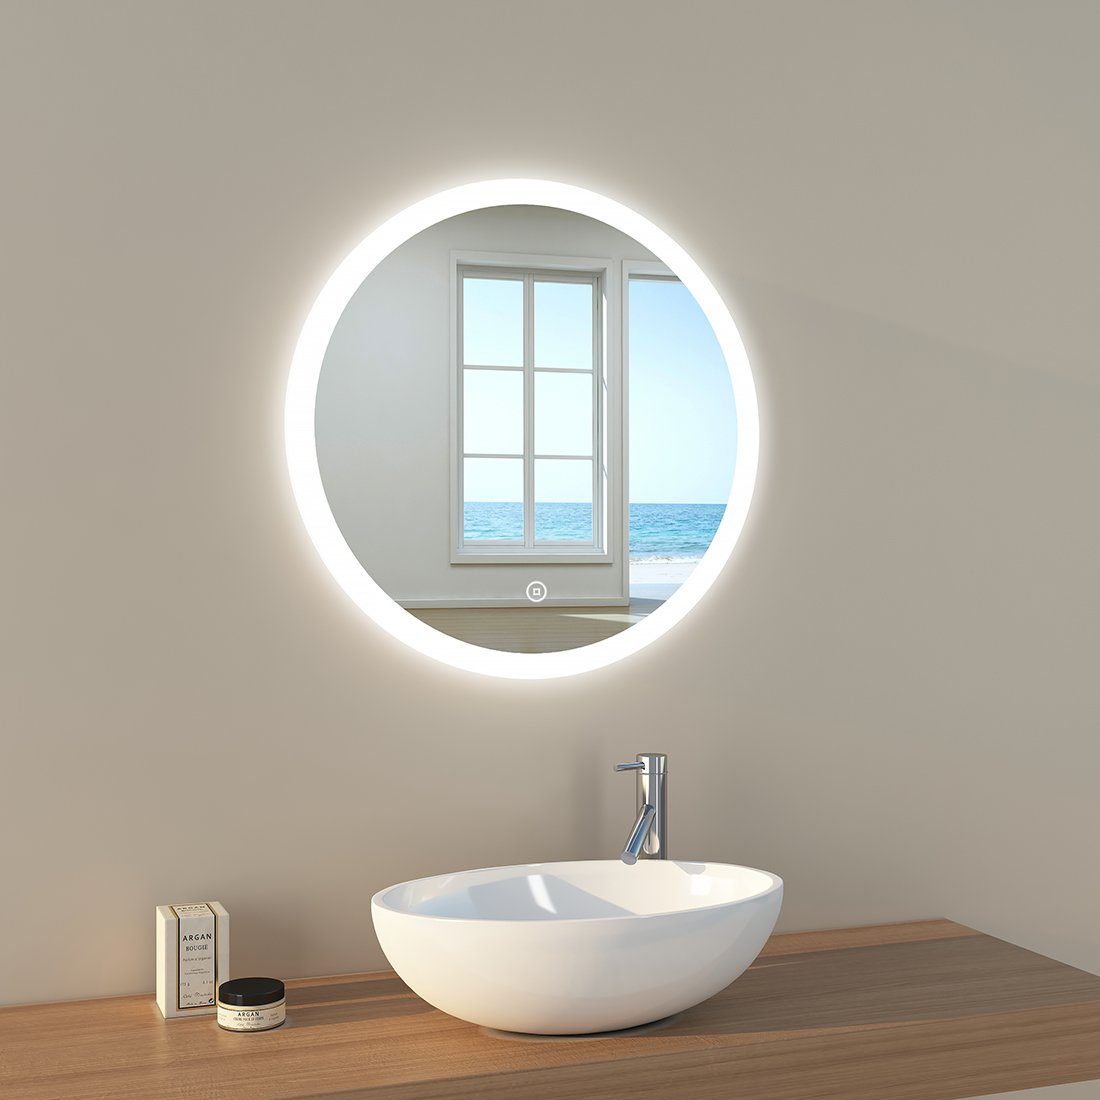 Badspiegel mit Beleuchtung, LED A) Badezimmerspiegel, EMKE Rund EMKE Badspiegel mit Touch-Schalter(Type